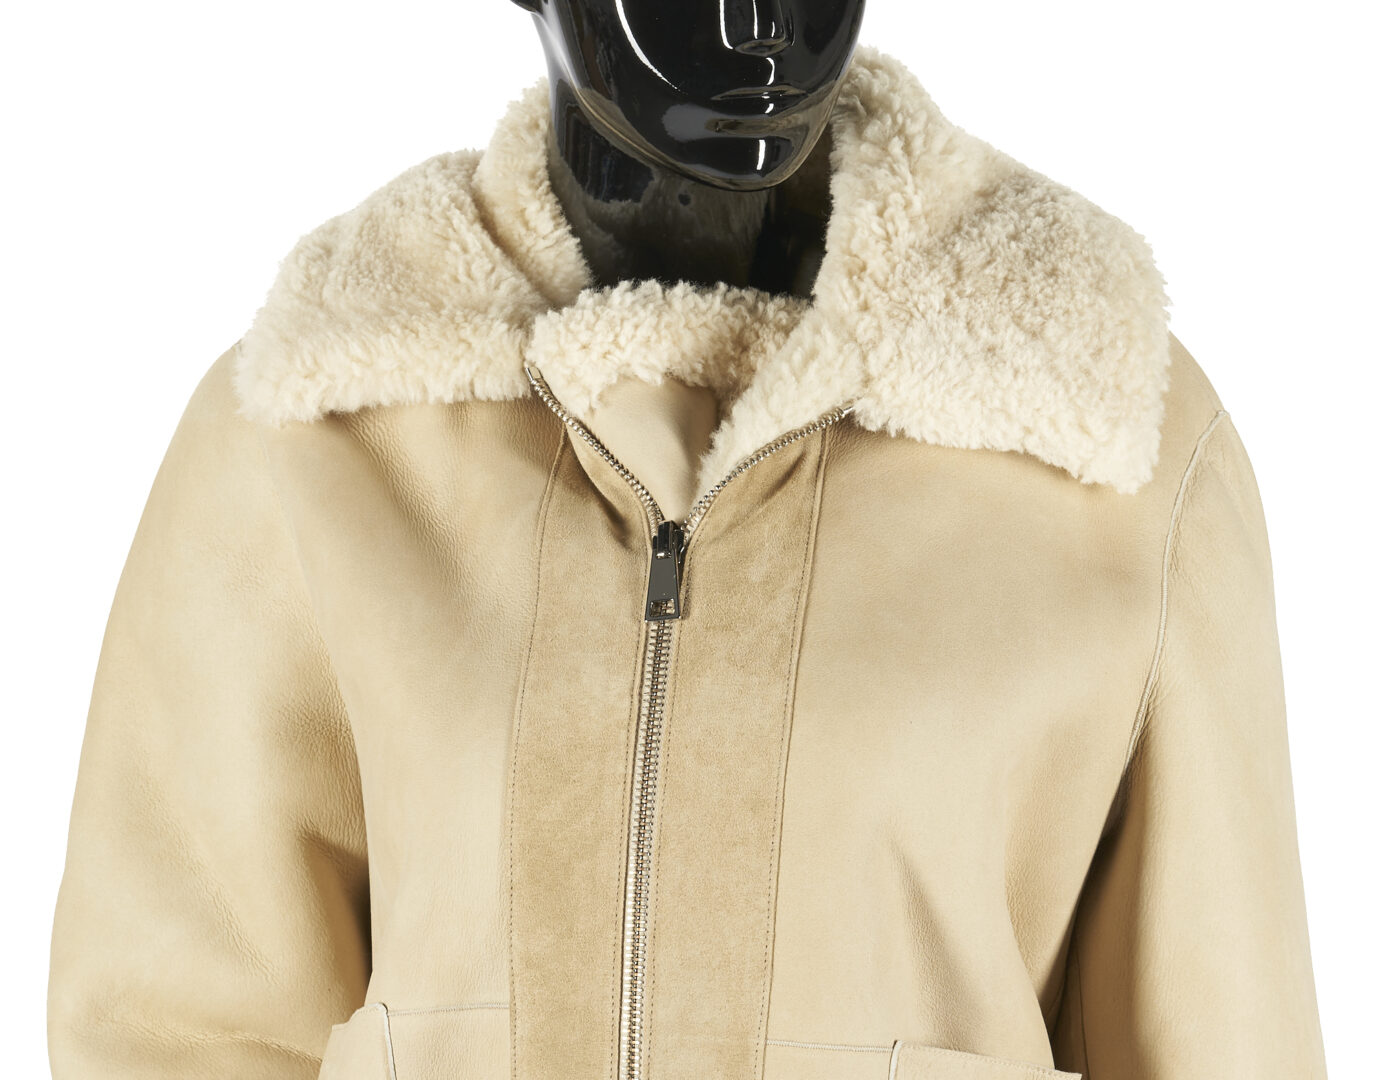 Lot 784: Bottega Veneta Reversible Shearling Leather Coat